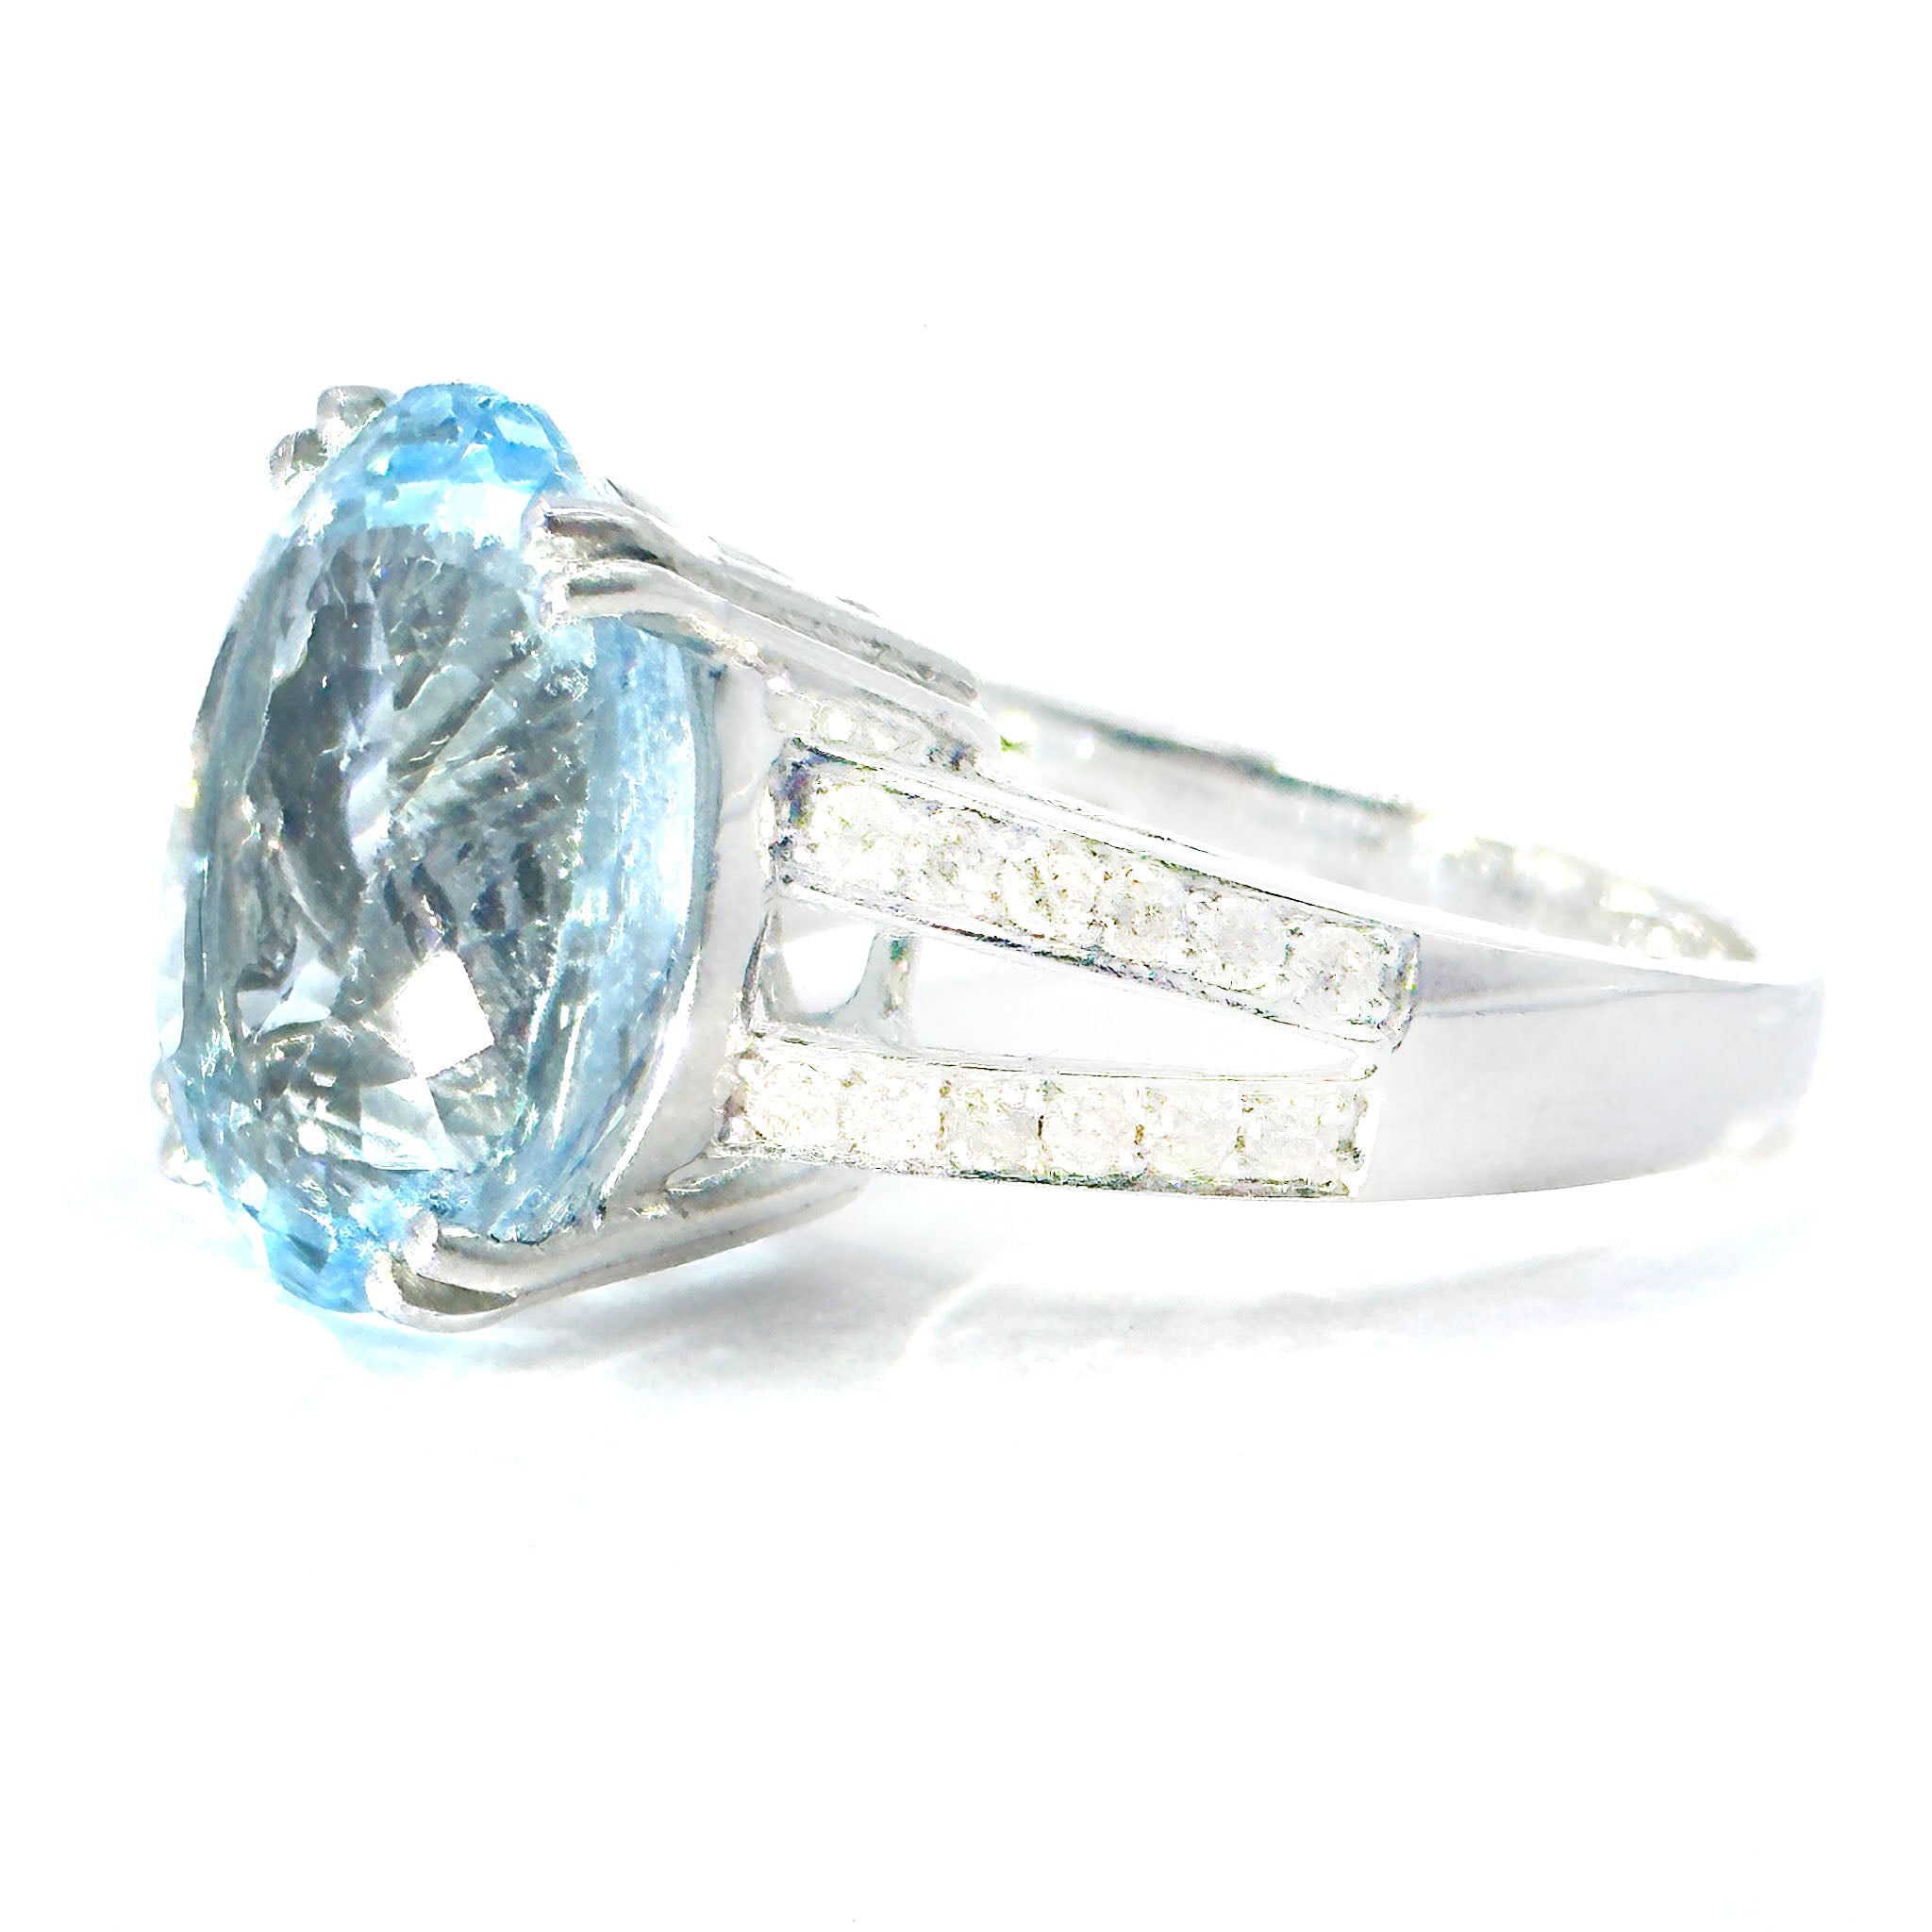 $6900 10.58Ct White Gold Aquamarine and Diamond Ring 14Kt